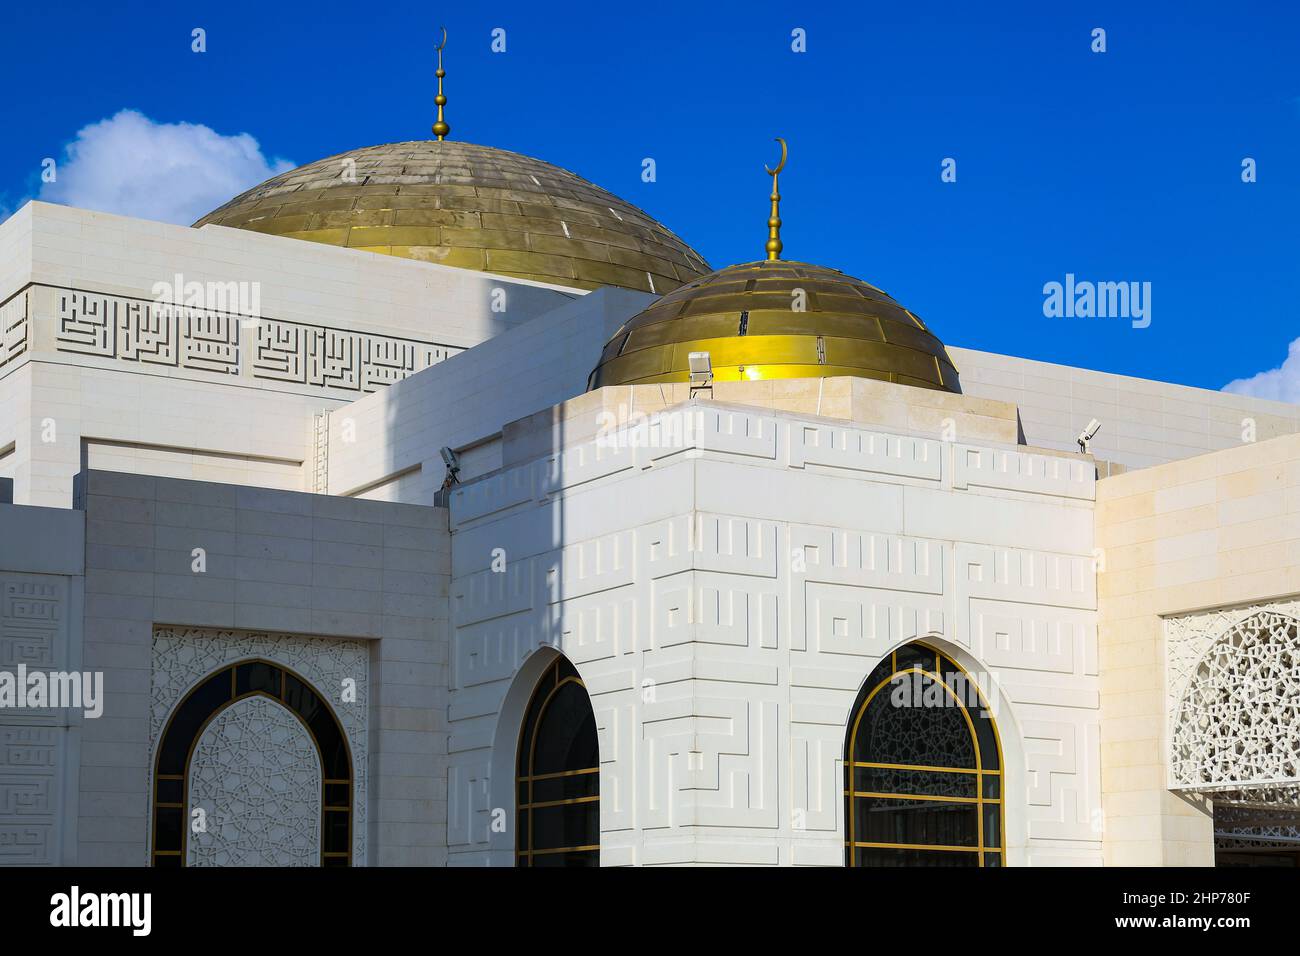 Amna bint Ahmad Al Ghurair Mosque - Ajman | UAE Stock Photo